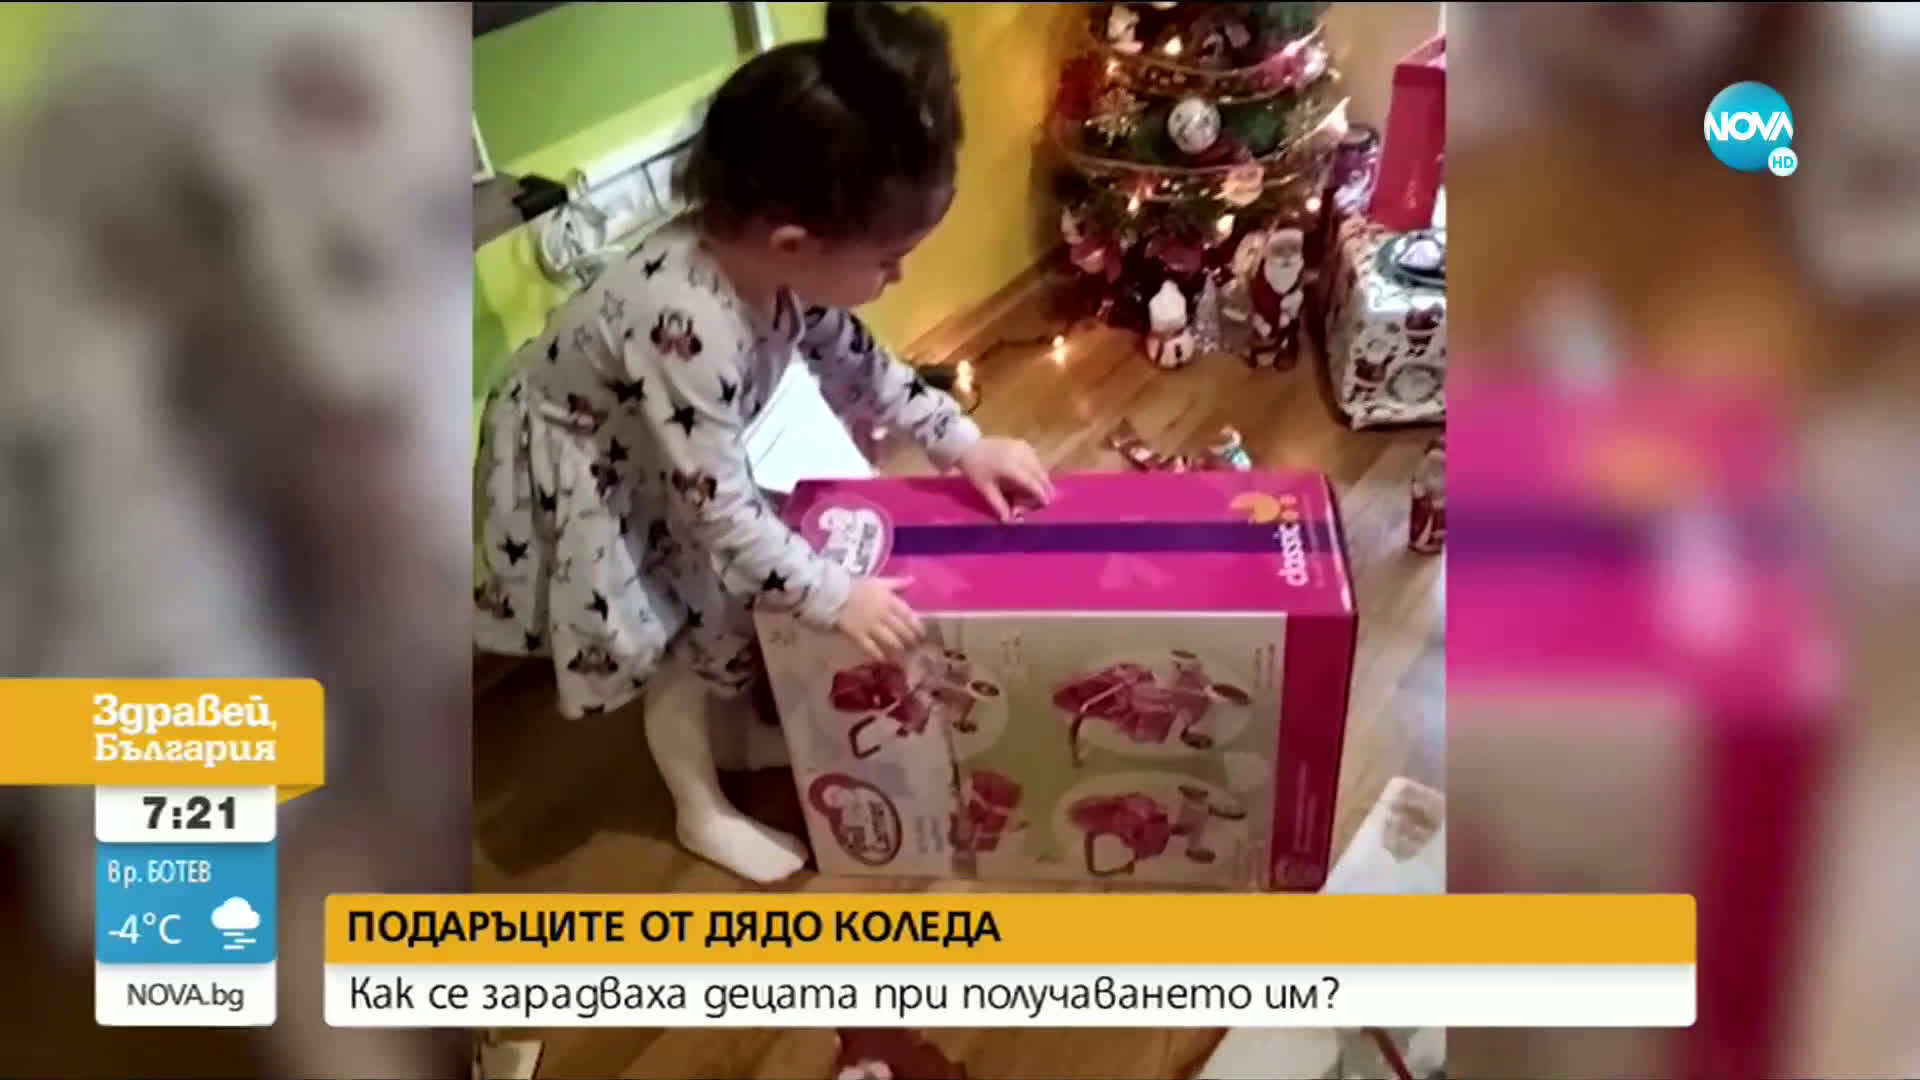 КОЛЕДНИ ЕМОЦИИ: Как реагират децата при отварянето на подаръците?